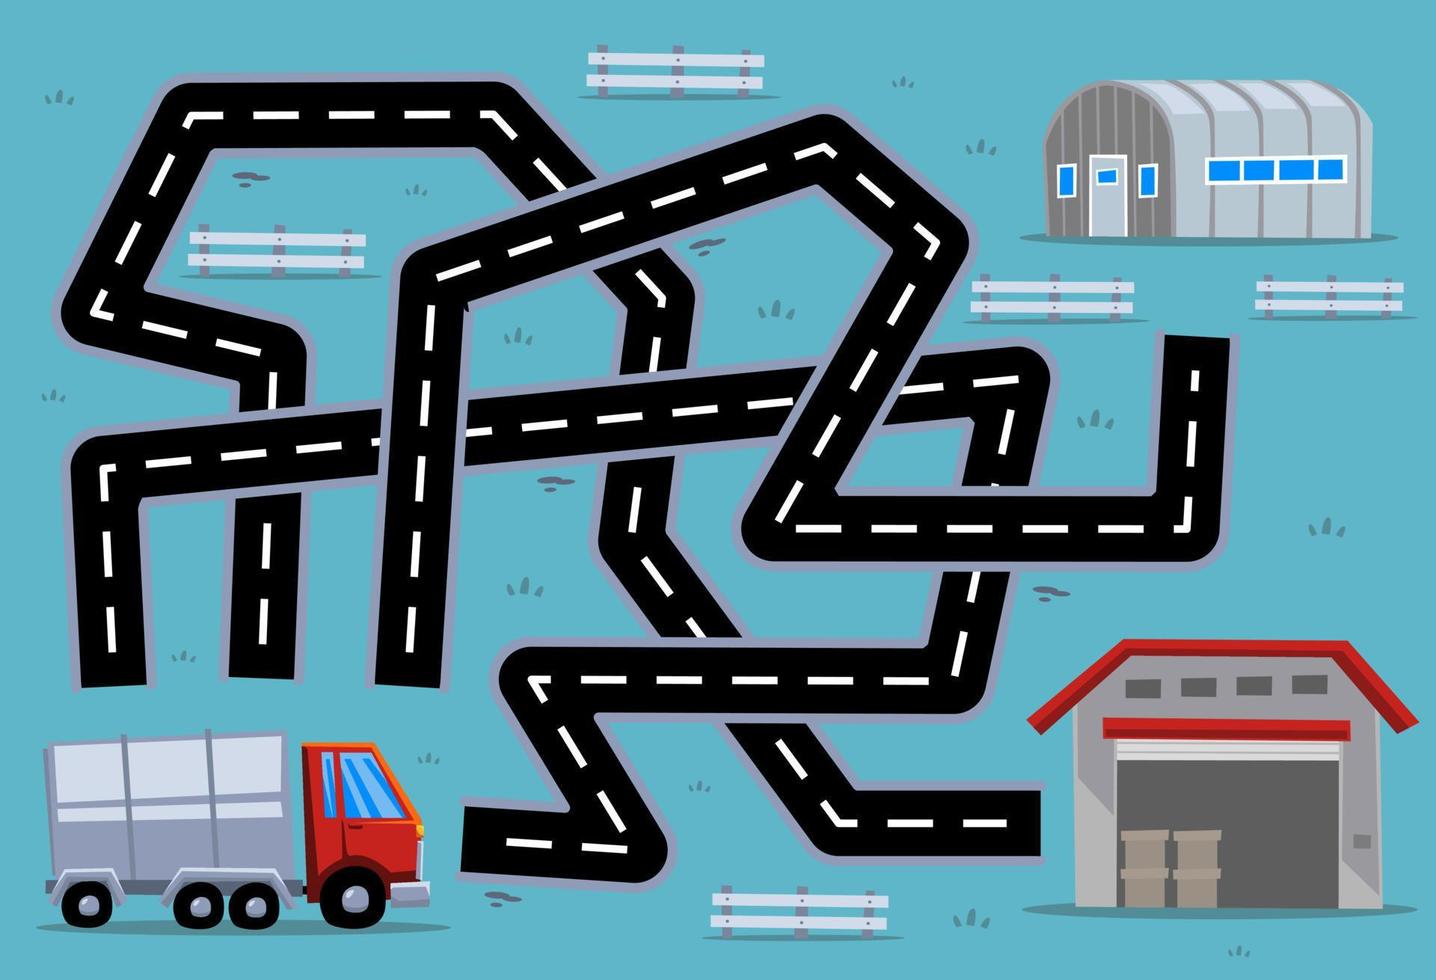 juego de rompecabezas de laberinto para niños ayuda al camión de transporte de dibujos animados a encontrar el camino correcto al almacén o al cuartel vector